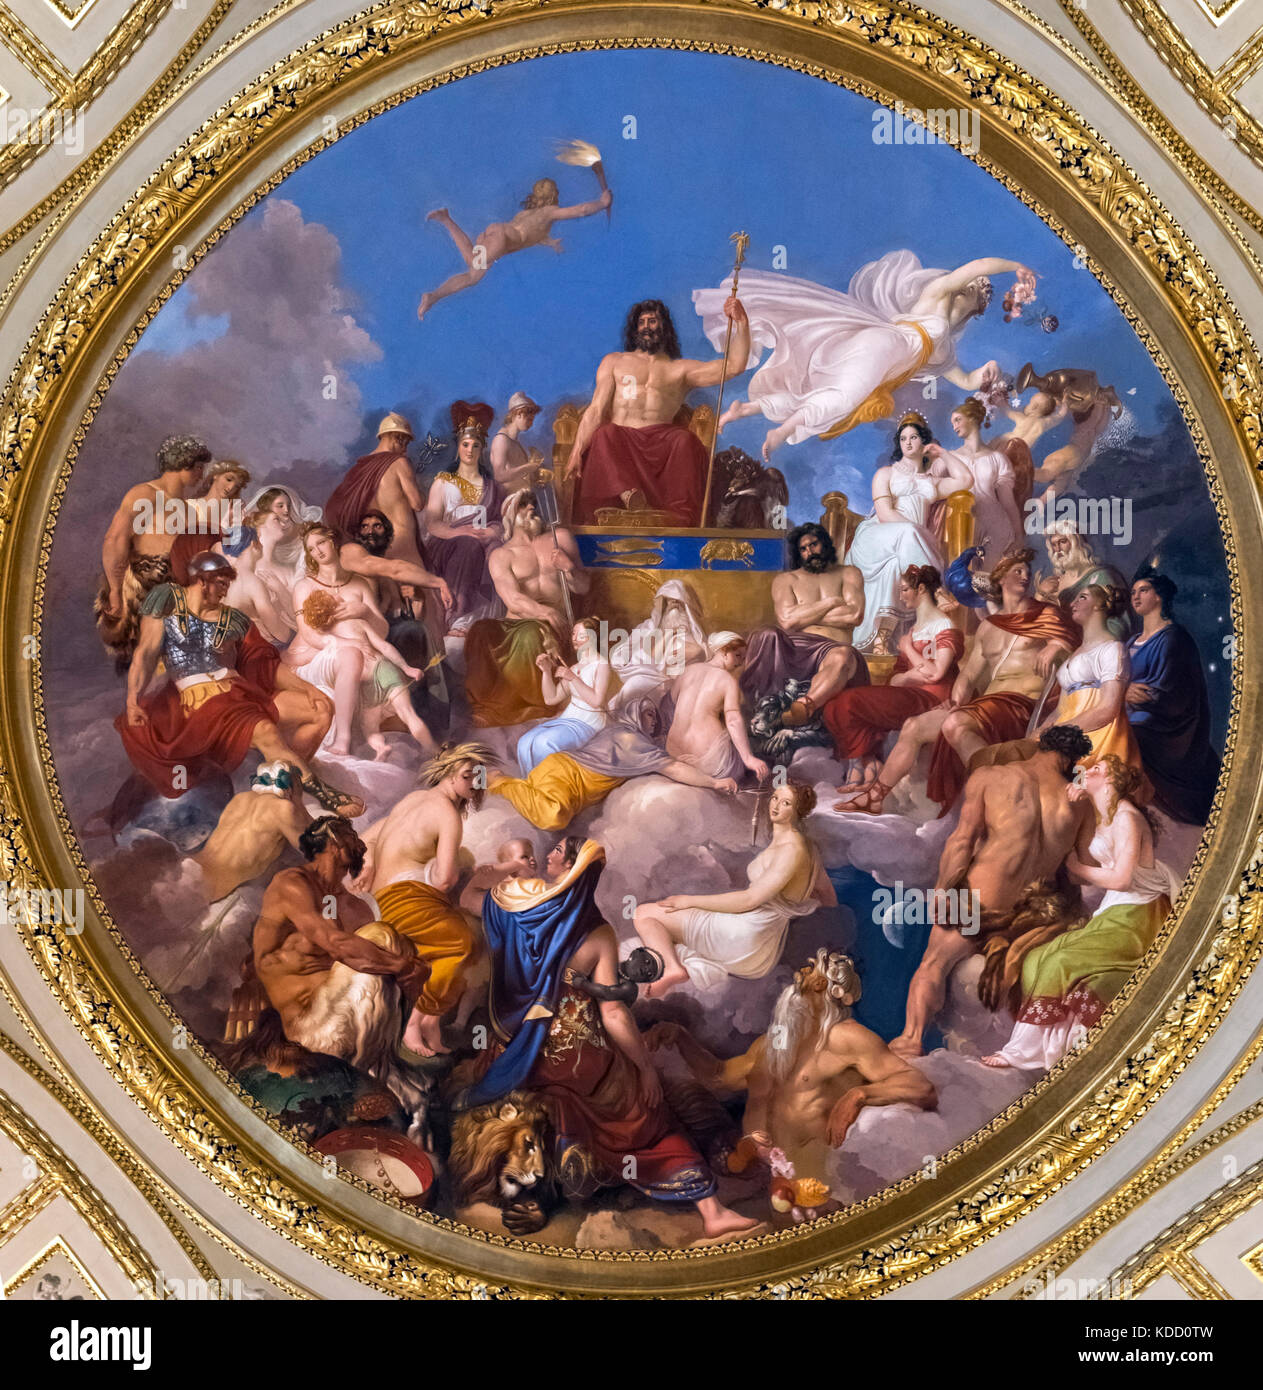 Asamblea de los dioses presididos por Júpiter, la pintura en el techo de la Ilíada, habitación de la galería Palatina, Palazzo Pitti (Palacio Pitti), Florencia, Italia. Foto de stock